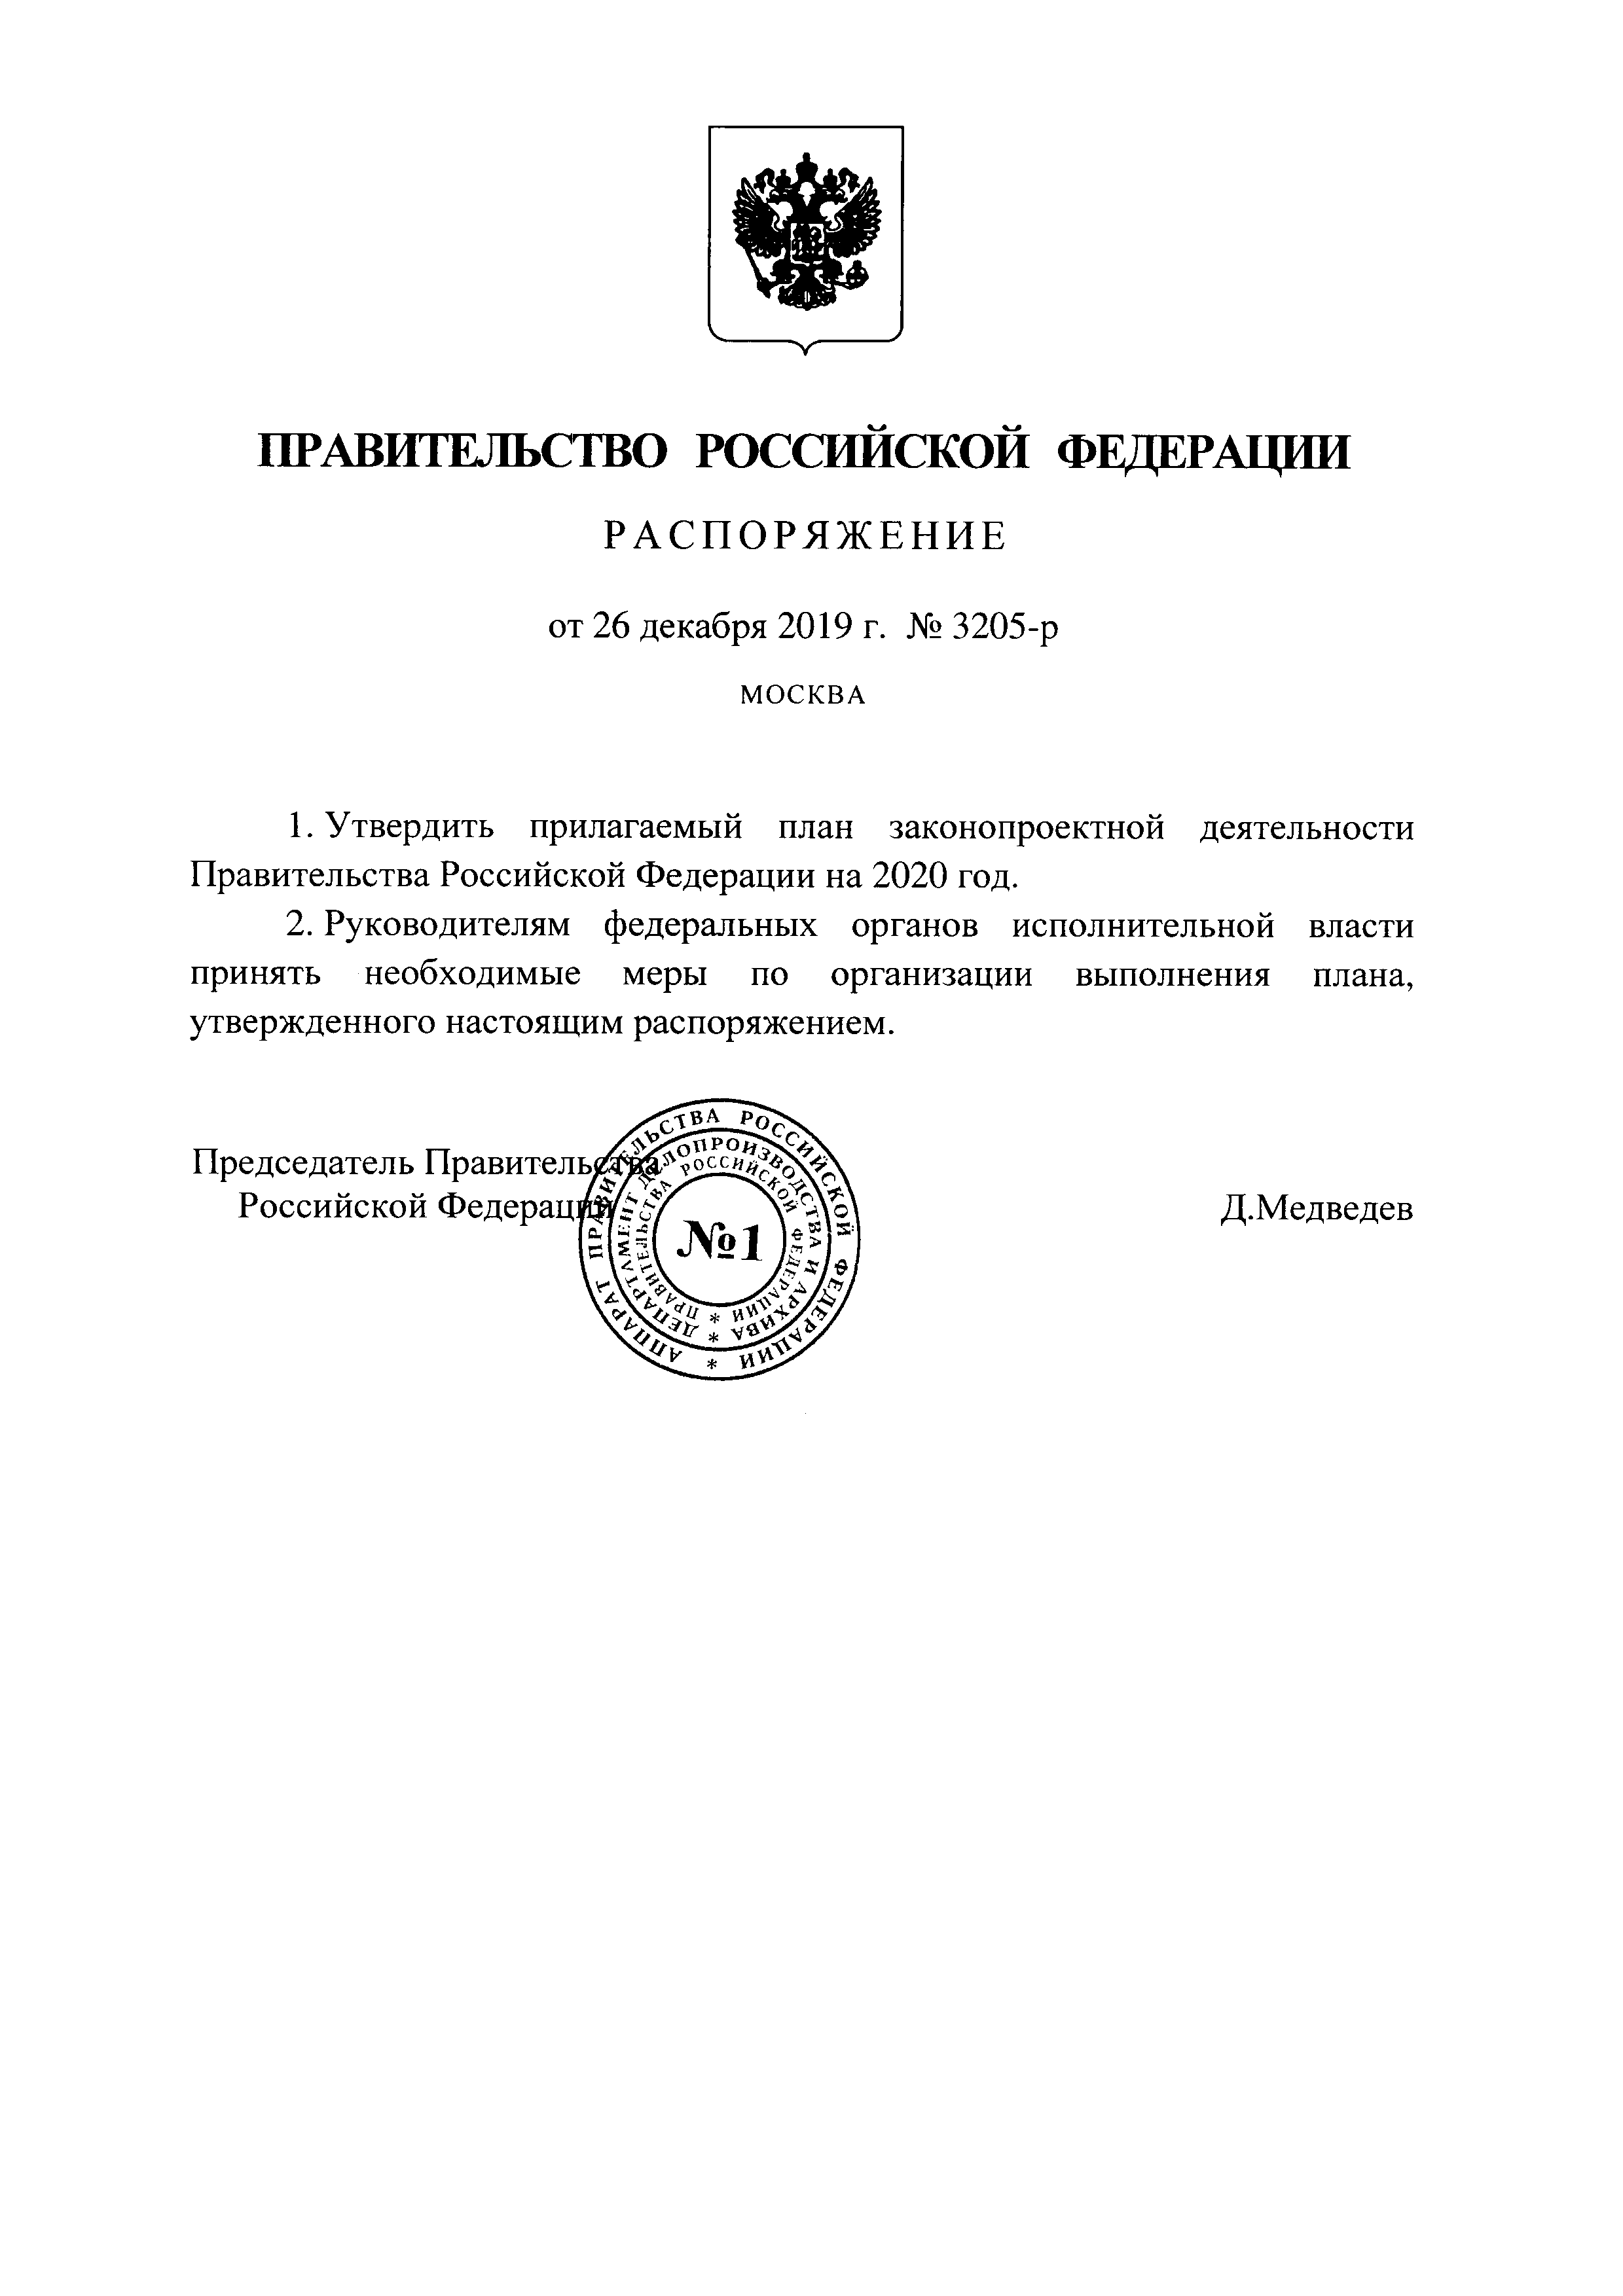 Распоряжения председателя правительства Российской Федерации.